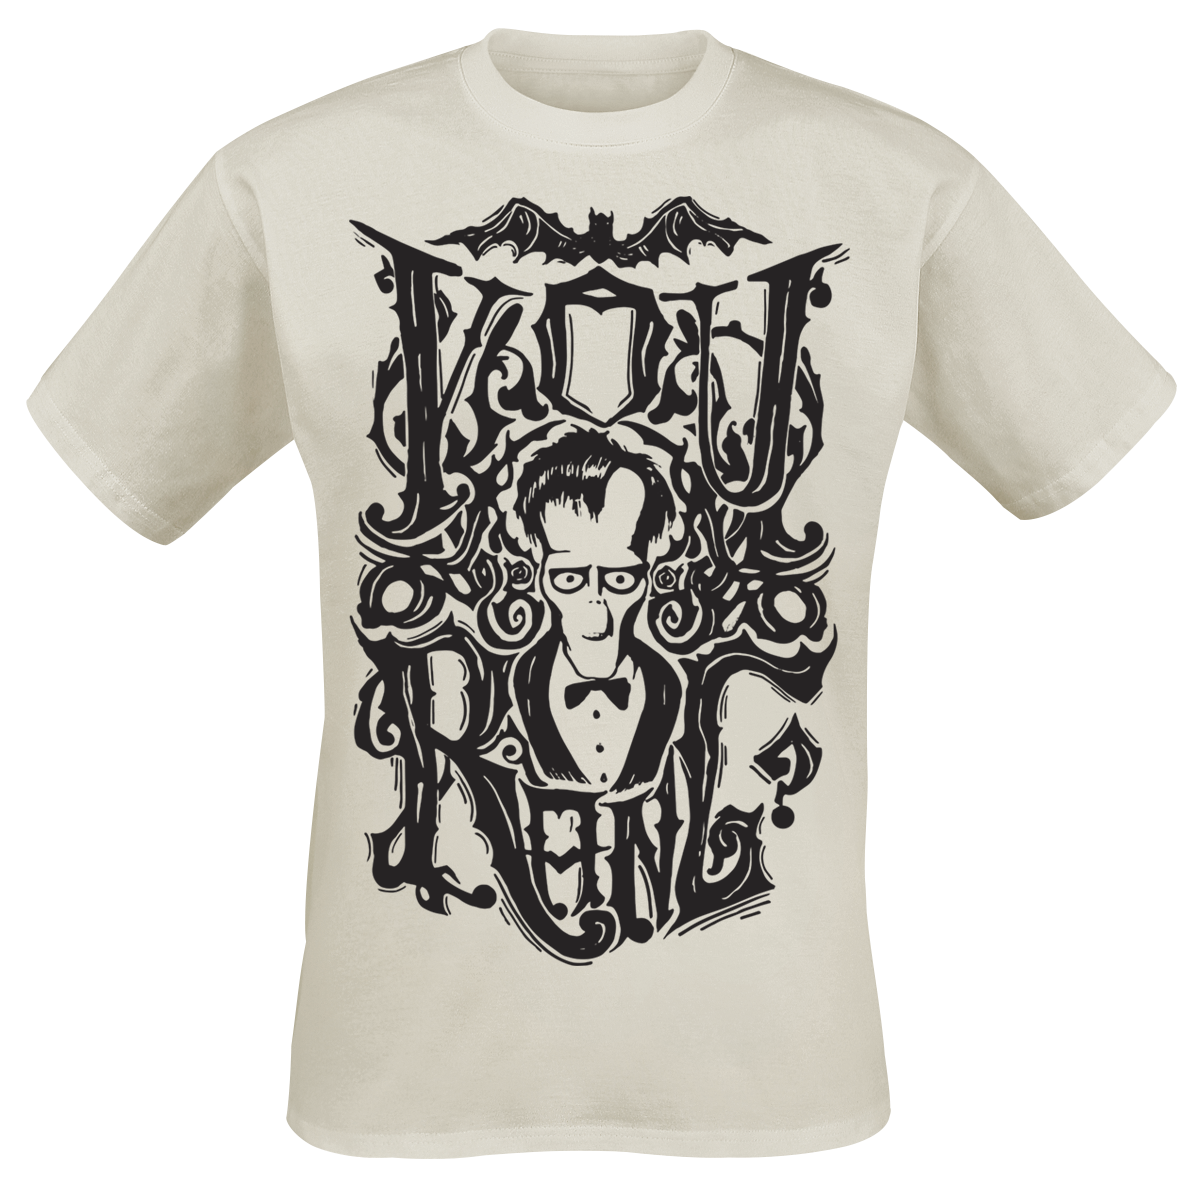 The Addams Family - You Rang? - T-Shirt - creme image